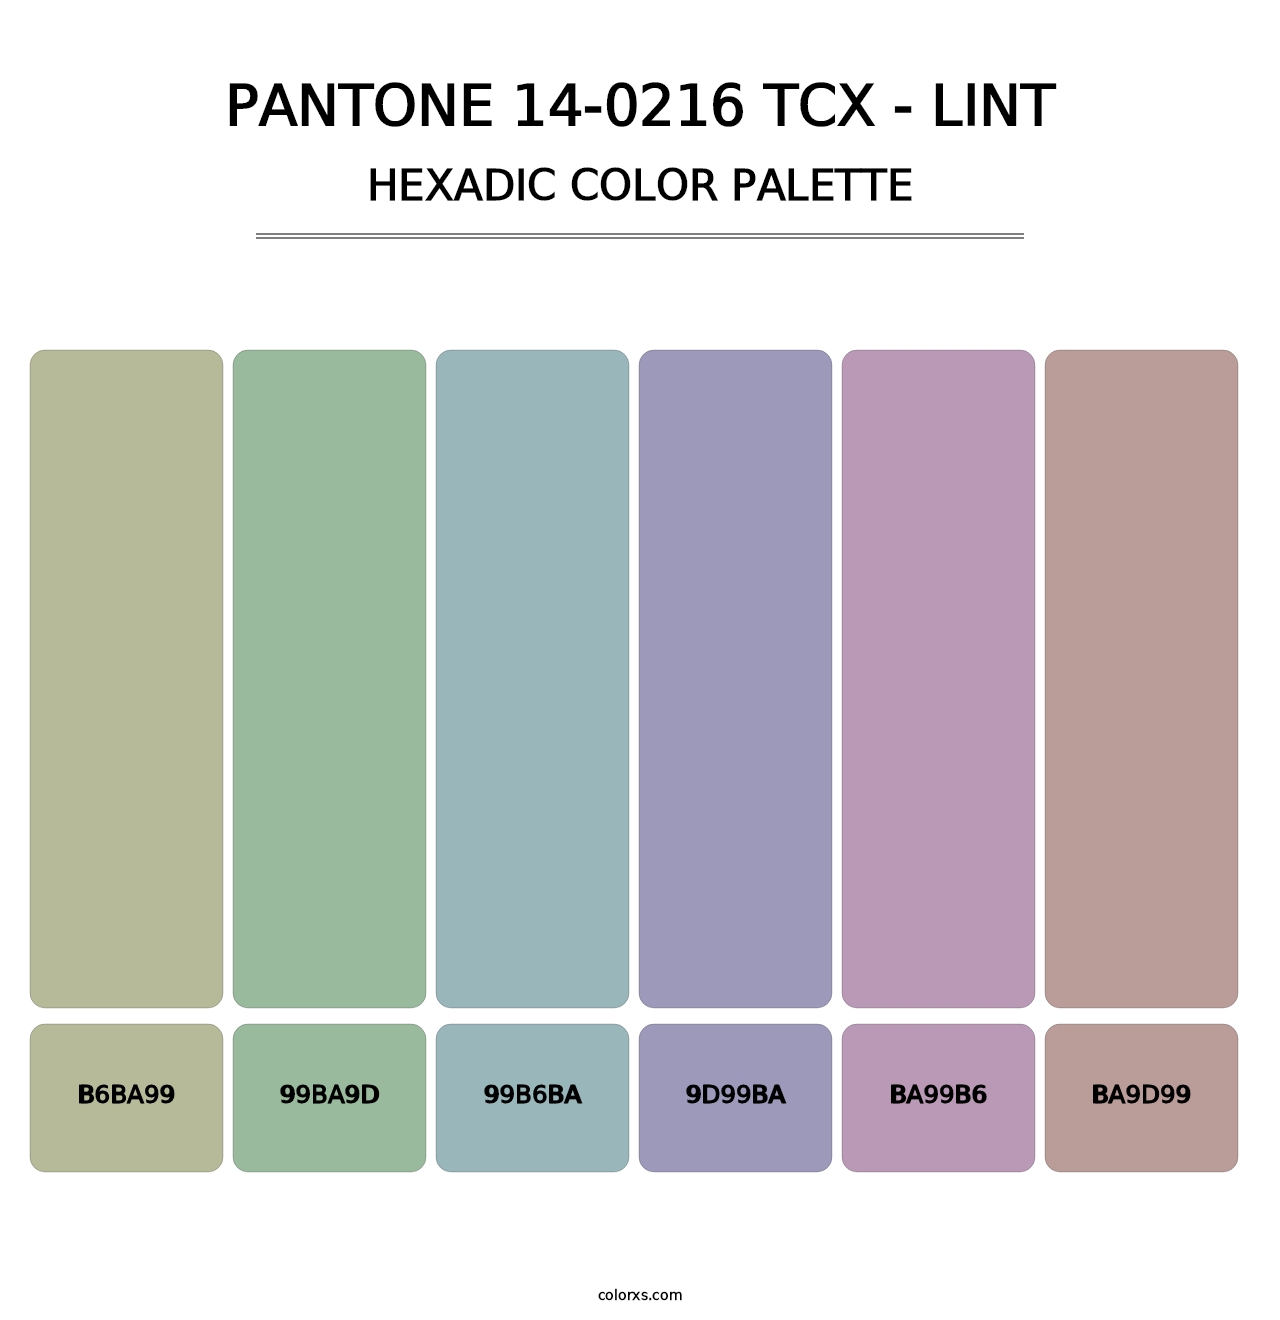 PANTONE 14-0216 TCX - Lint - Hexadic Color Palette